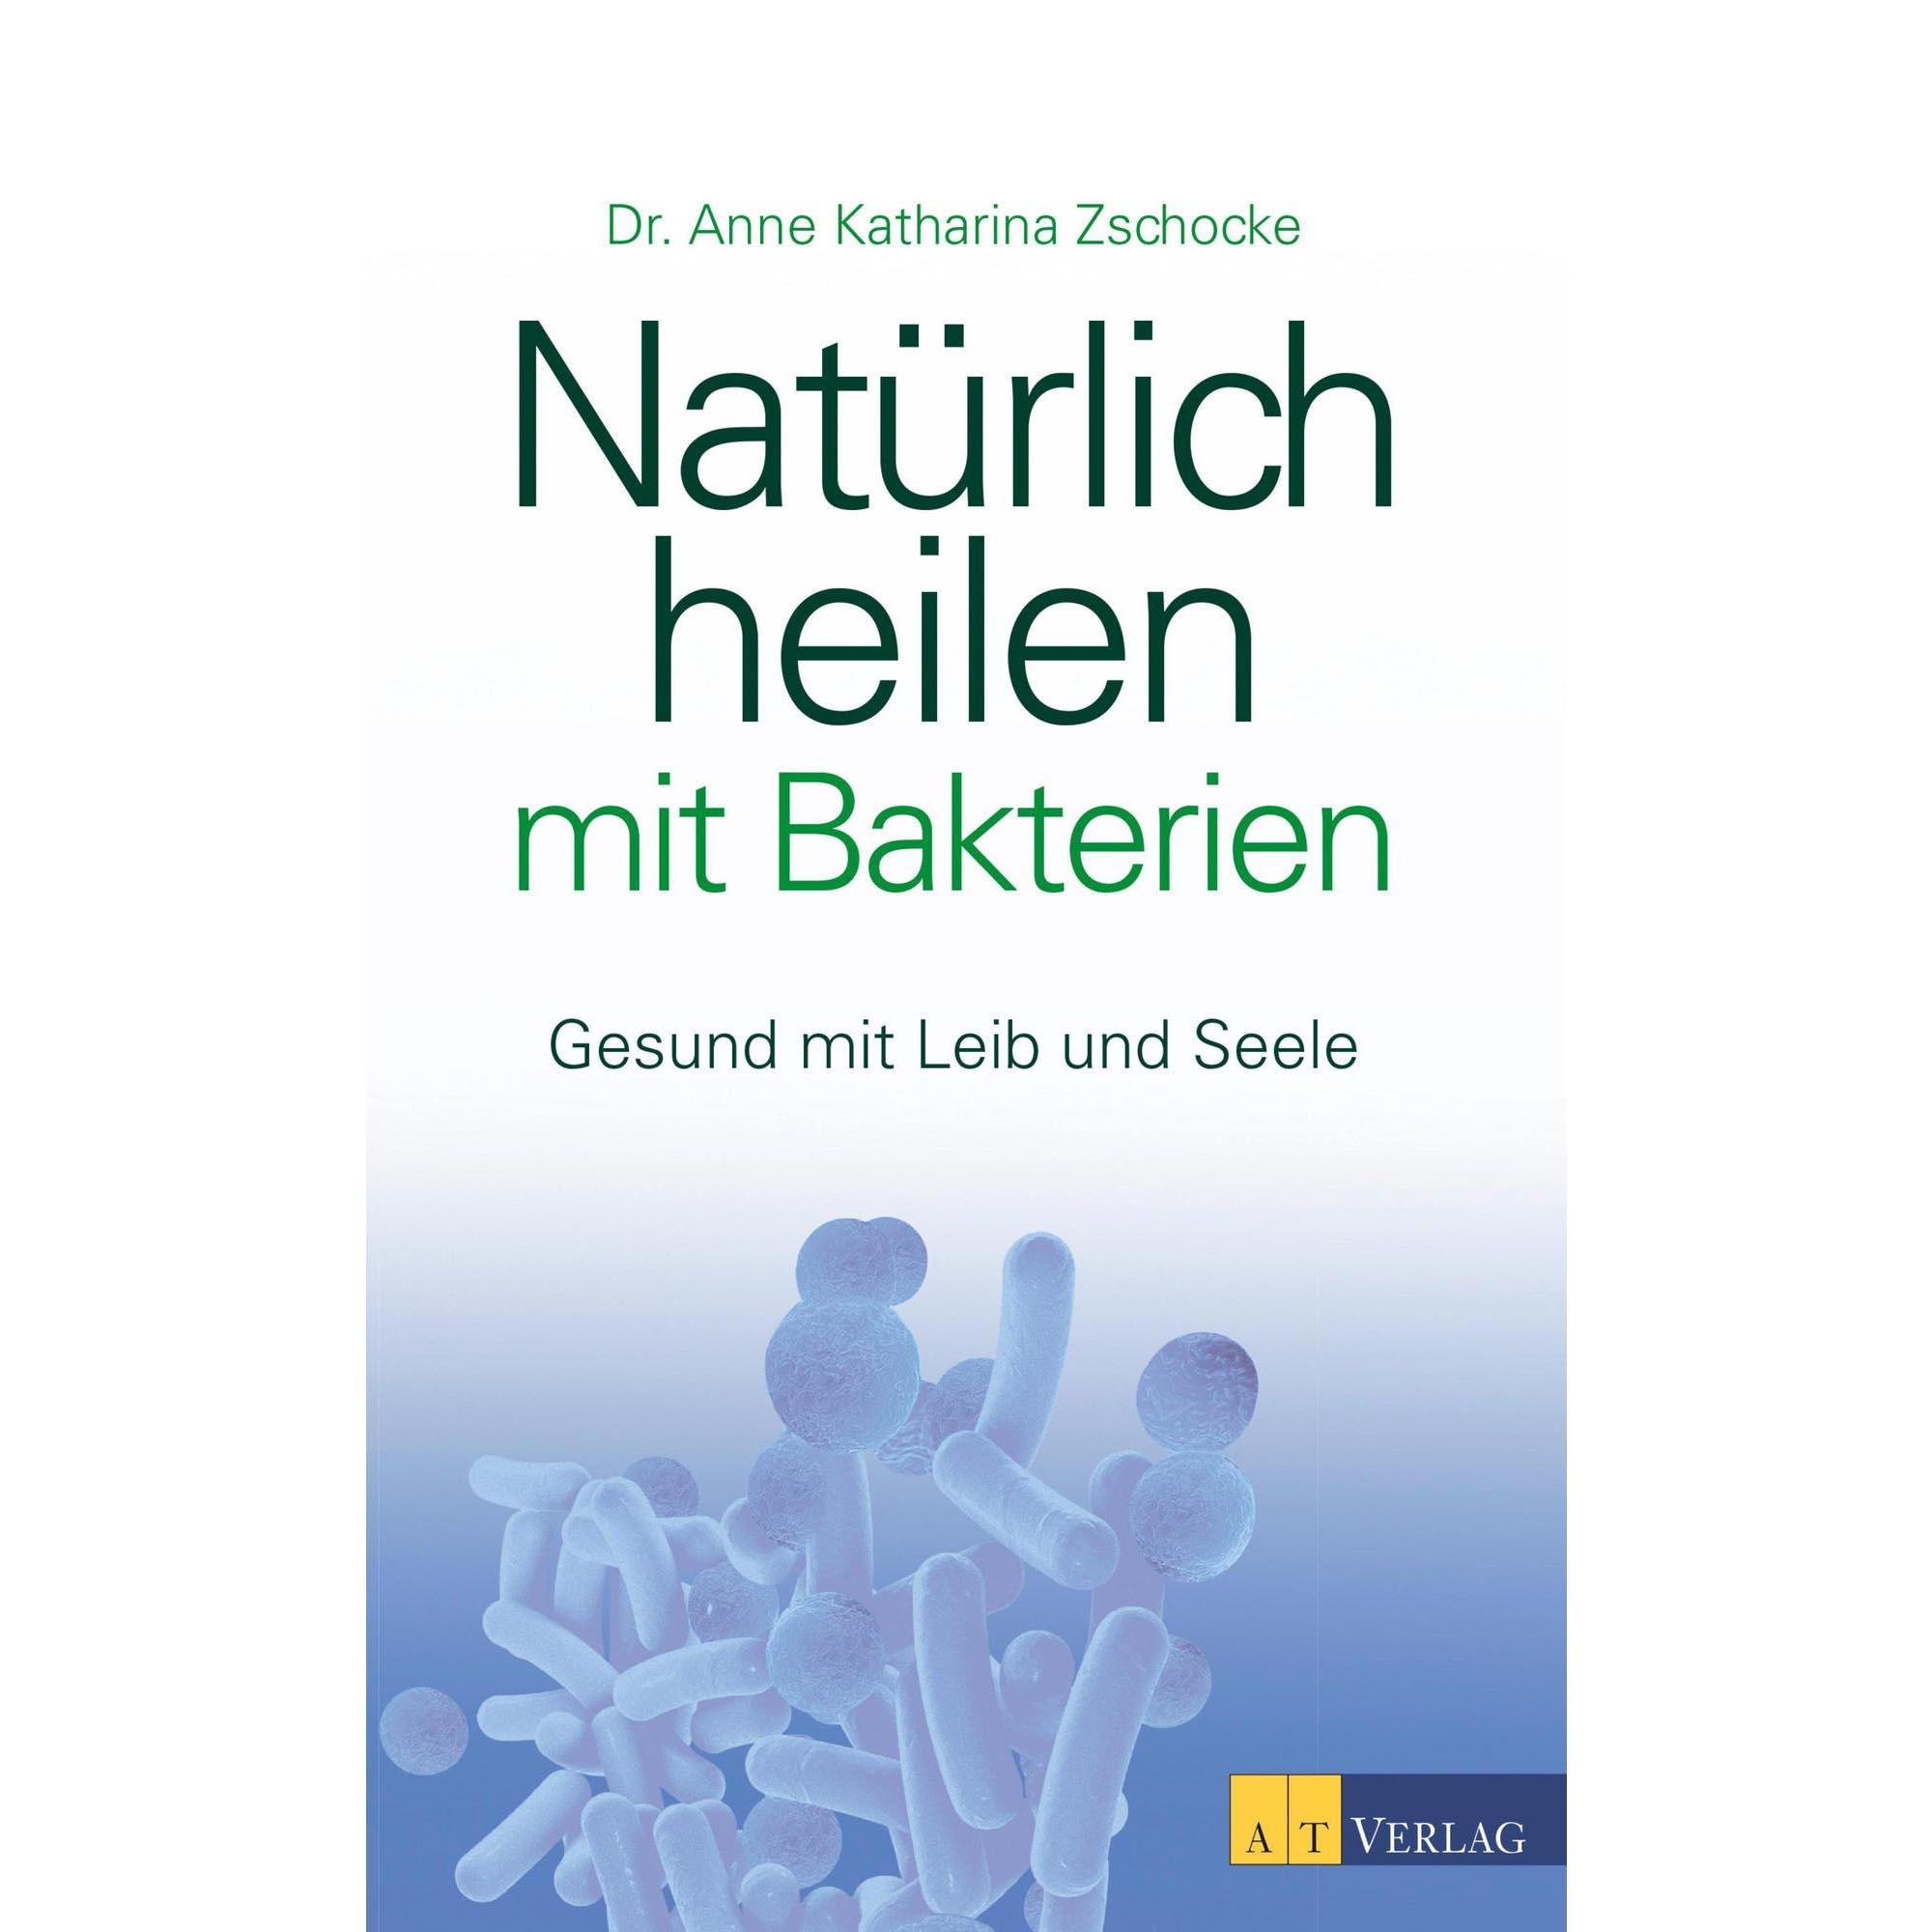 Natürlich heilen mit Bakterien - Dr. Anne Katharina Zschocke